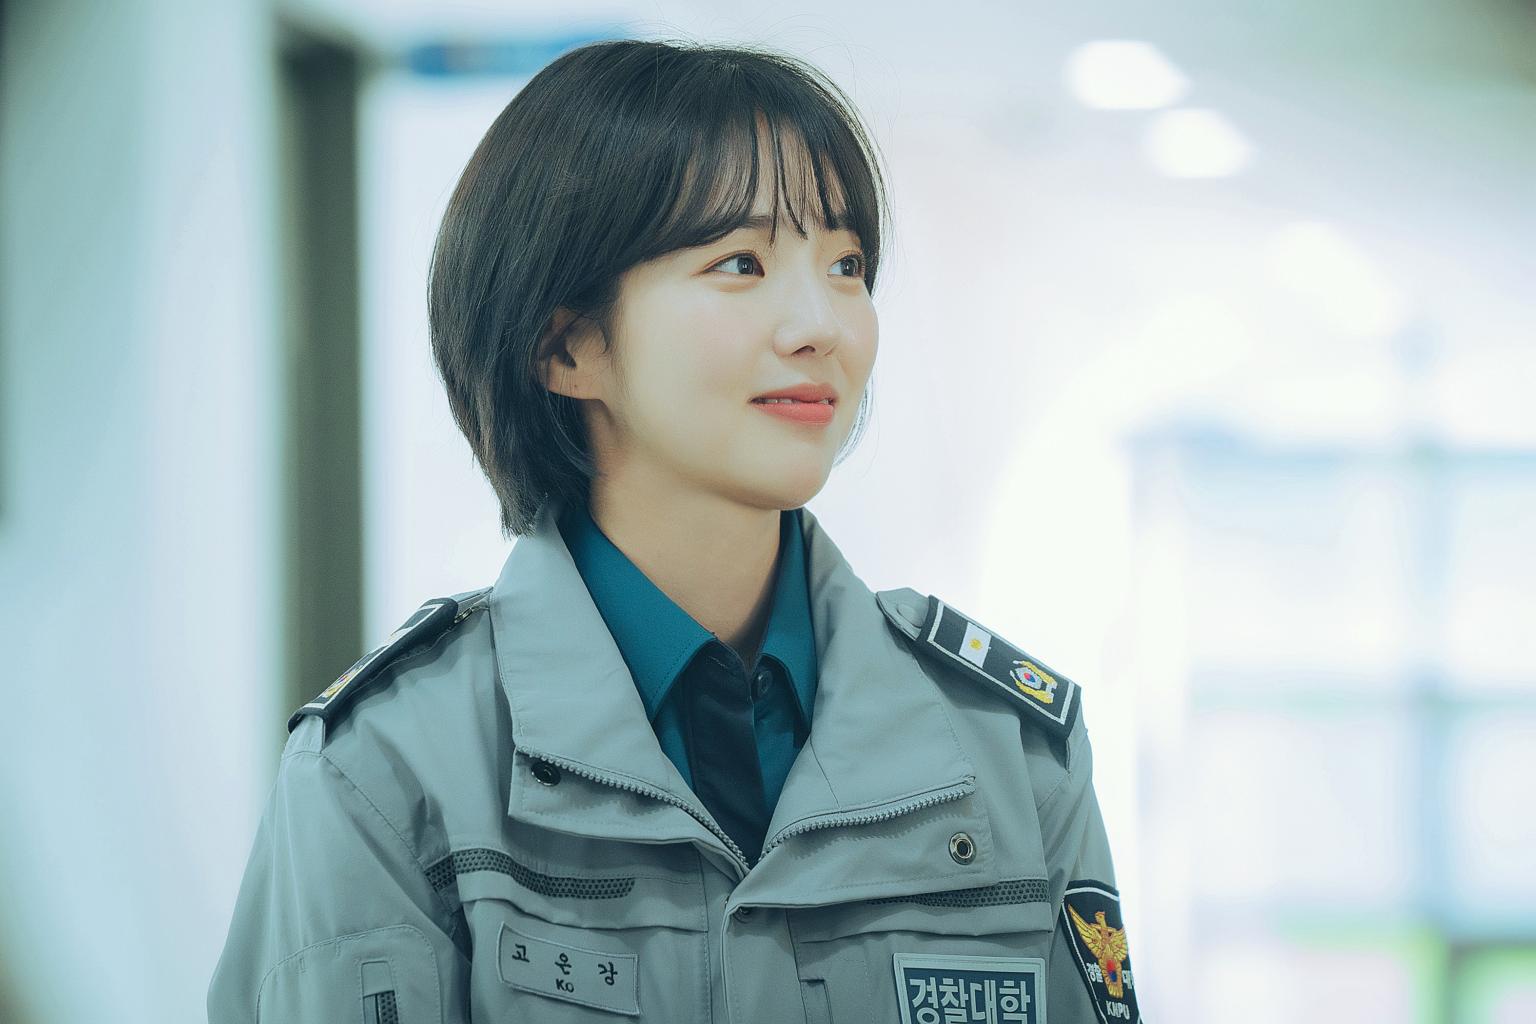 الكوري الشرطة مسلسل اكاديمية دراما Police